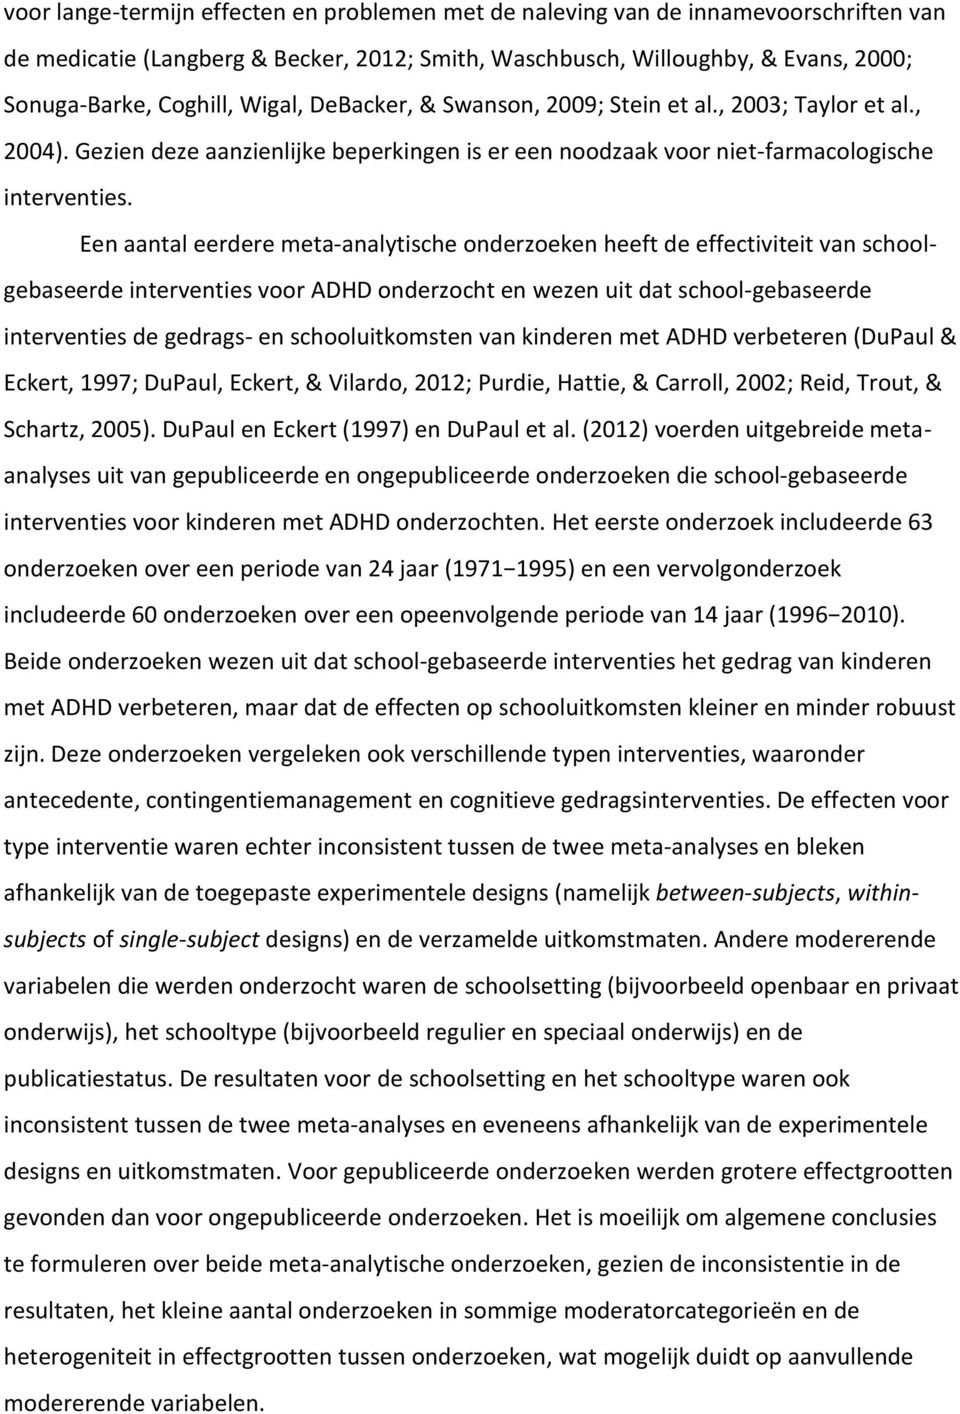 Een aantal eerdere meta-analytische onderzoeken heeft de effectiviteit van schoolgebaseerde interventies voor ADHD onderzocht en wezen uit dat school-gebaseerde interventies de gedrags- en